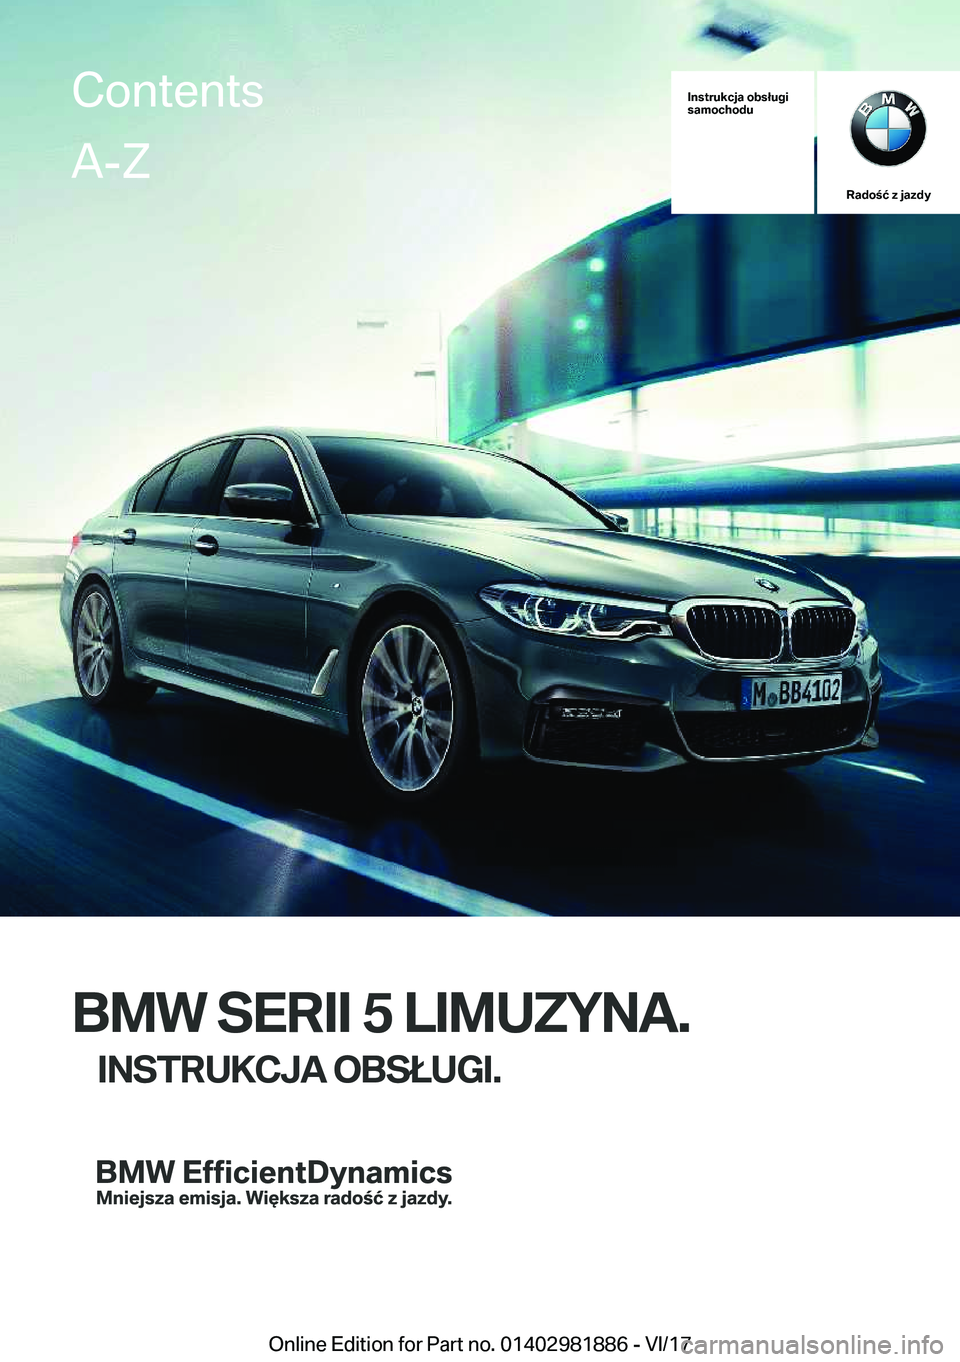 BMW 5 SERIES 2018  Instrukcja obsługi (in Polish) �I�n�s�t�r�u�k�c�j�a��o�b�s�ł�u�g�i
�s�a�m�o�c�h�o�d�u
�R�a�d�o�